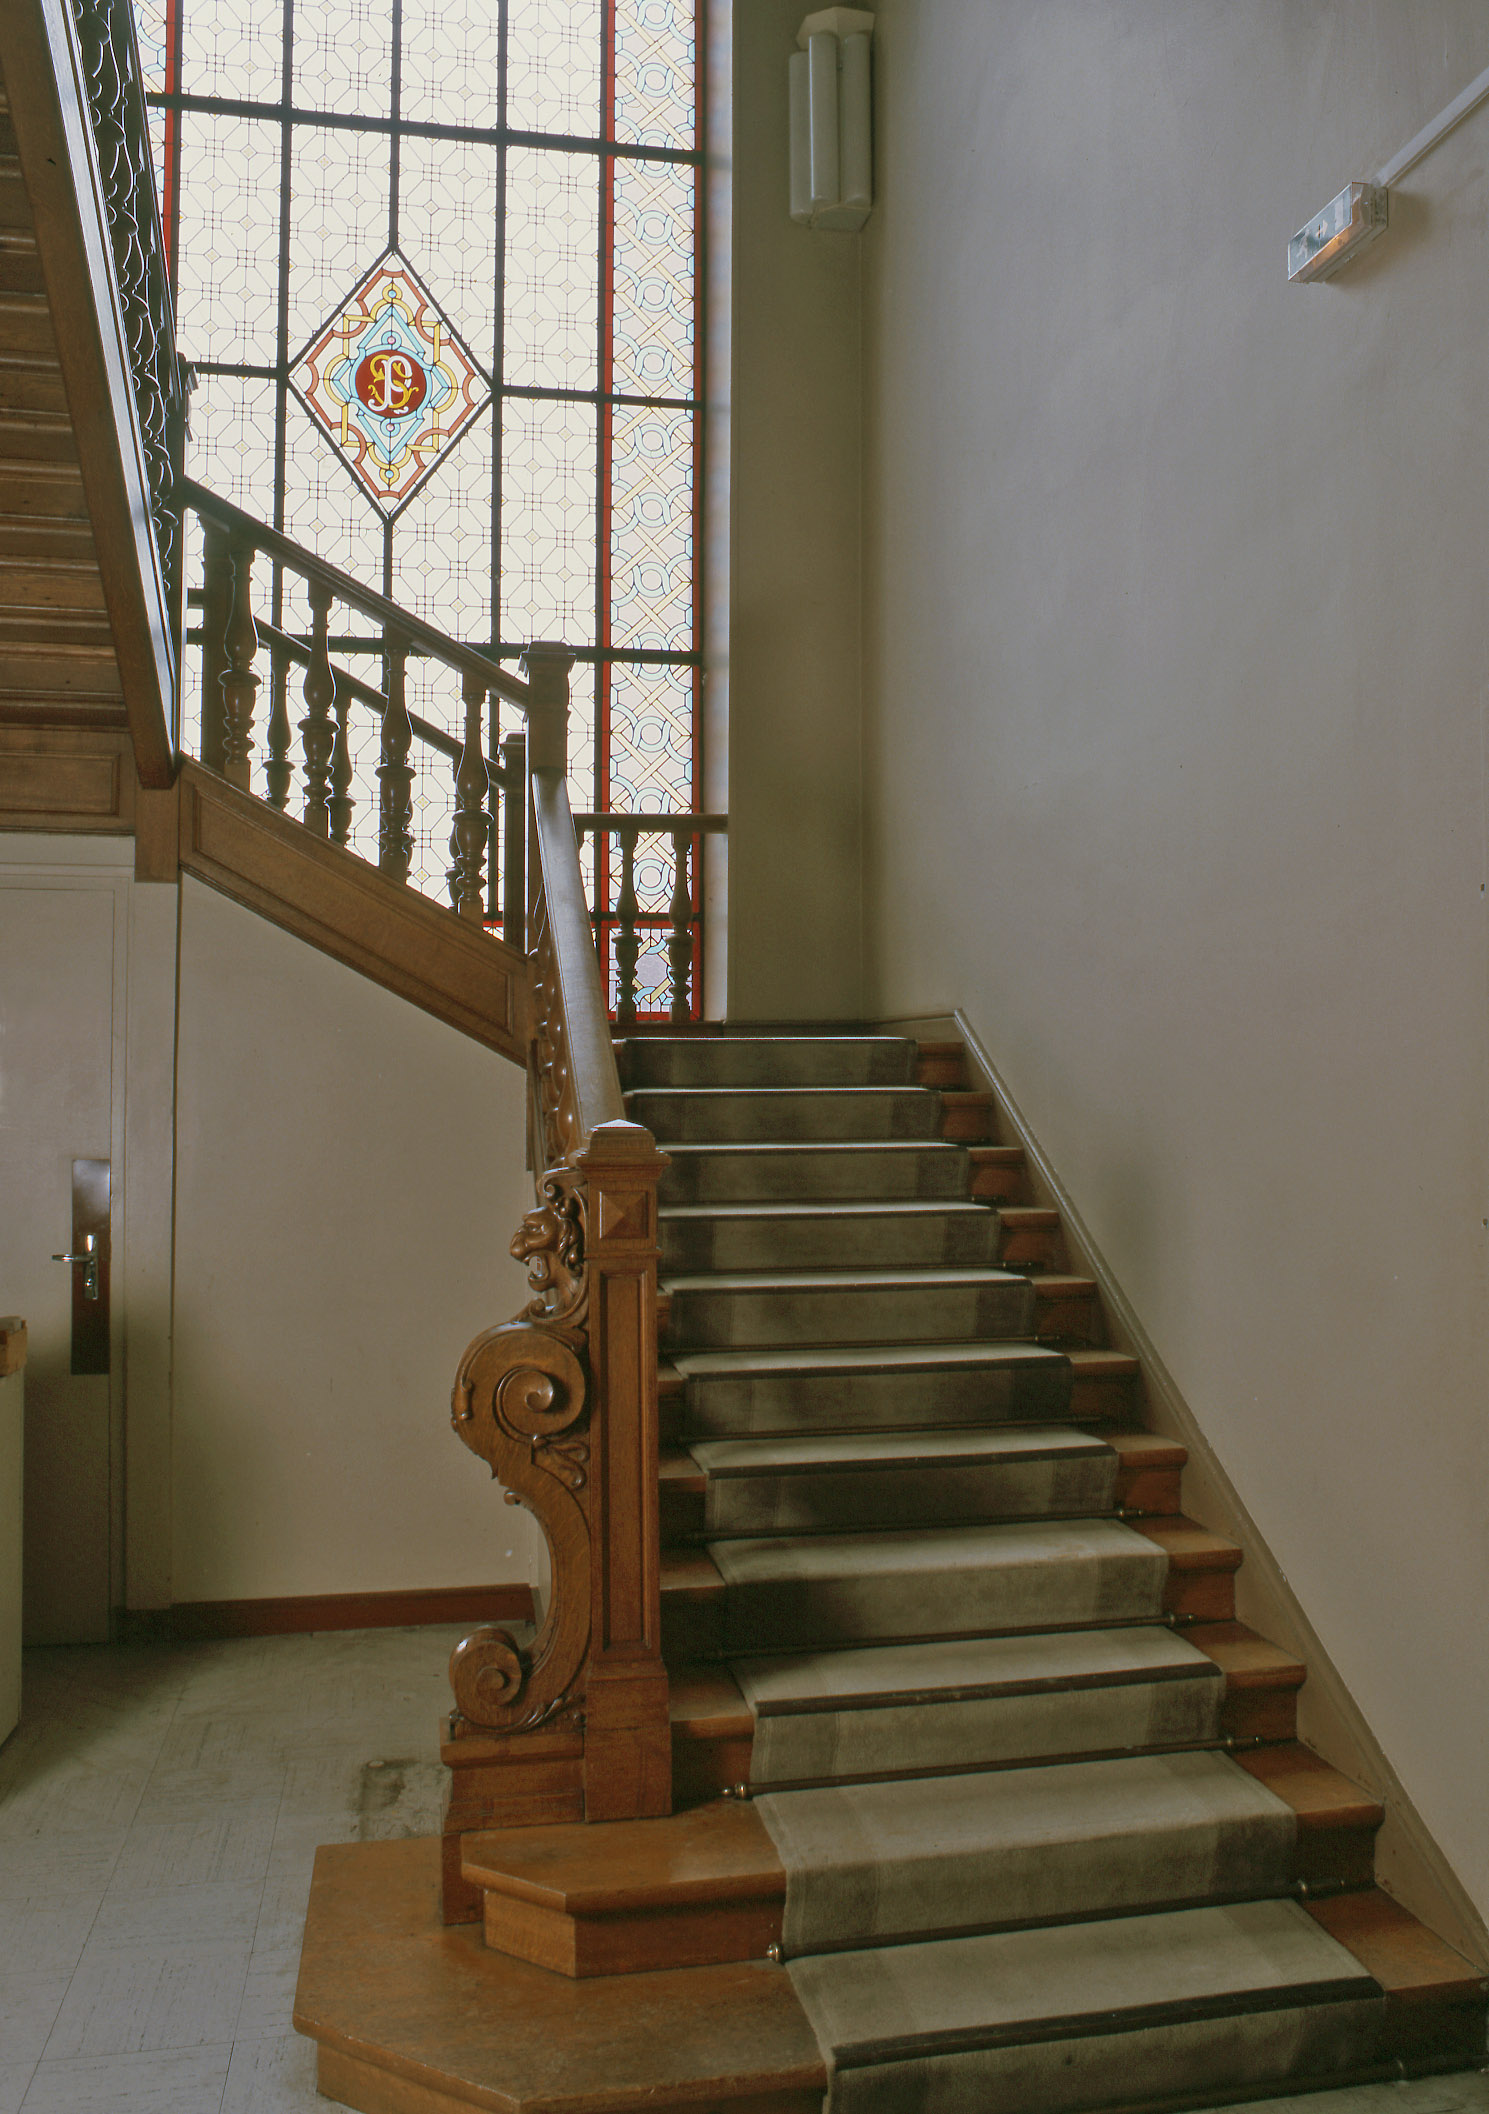 Vue générale de l'escalier intérieur tournant à retours, avec jour central, en charpente, qui dessert les étages. 